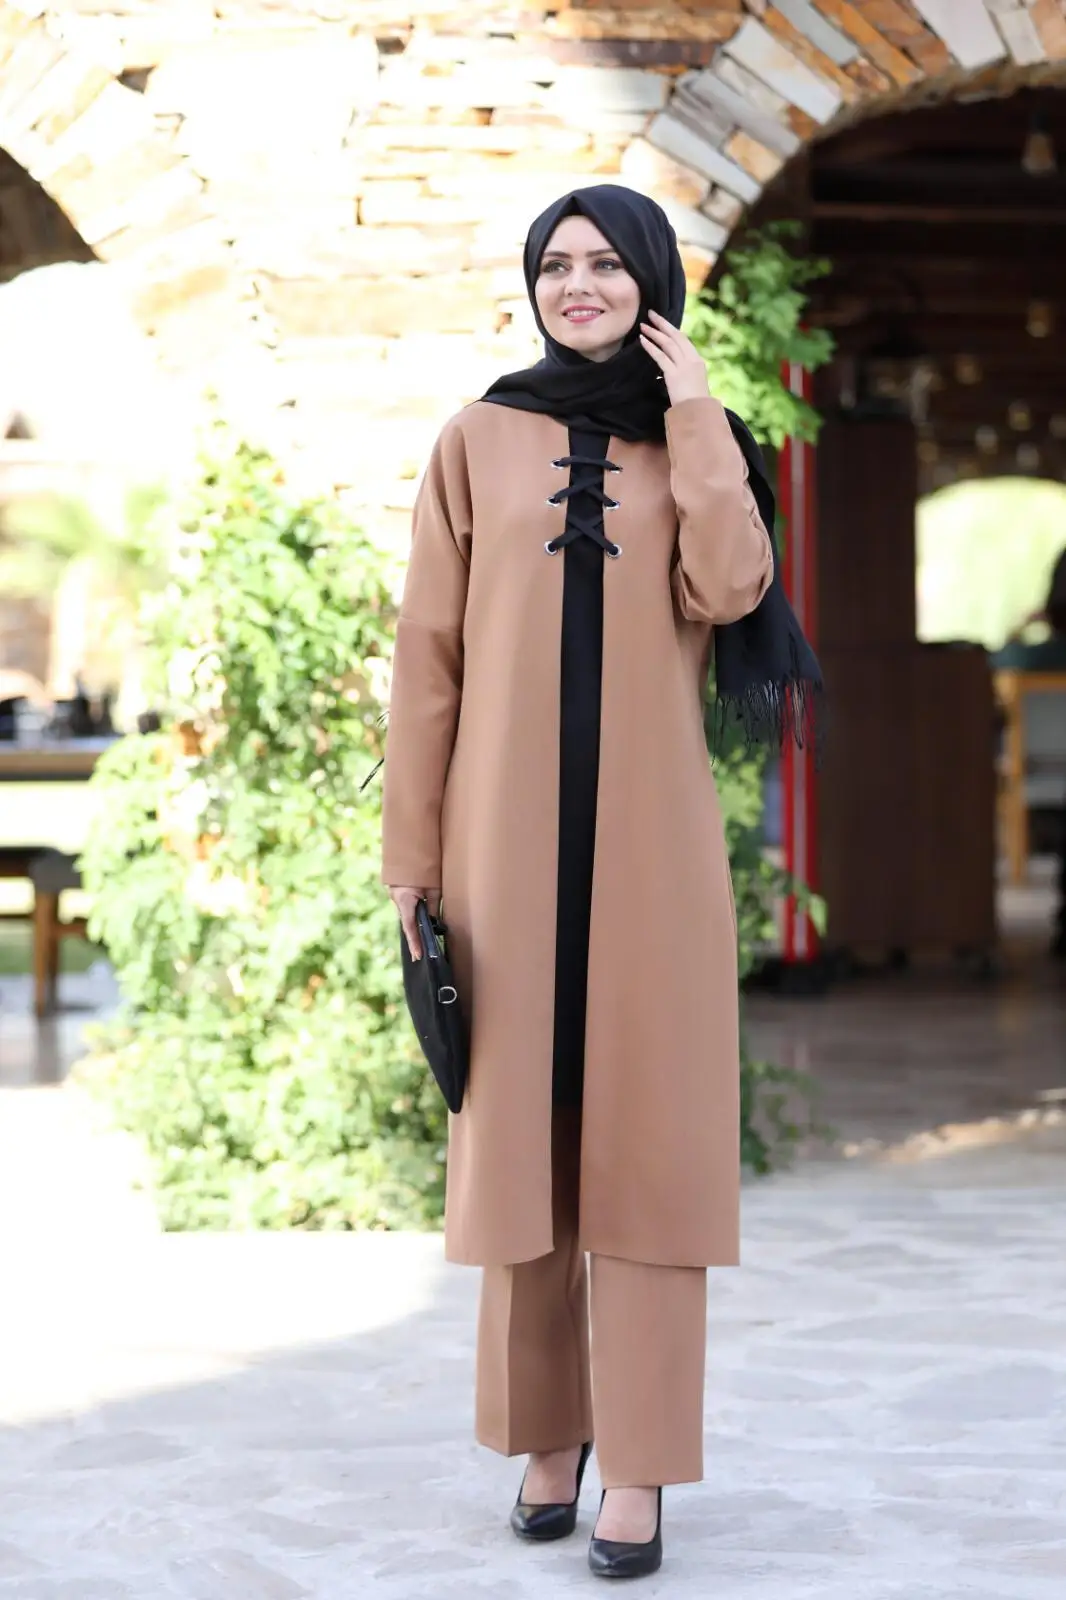 5561 мусульманское платье Женская одежда для хиджаба хиджаб исламский Женская одежда платье для женщин юбка с кружевной отделкой двойной кос...